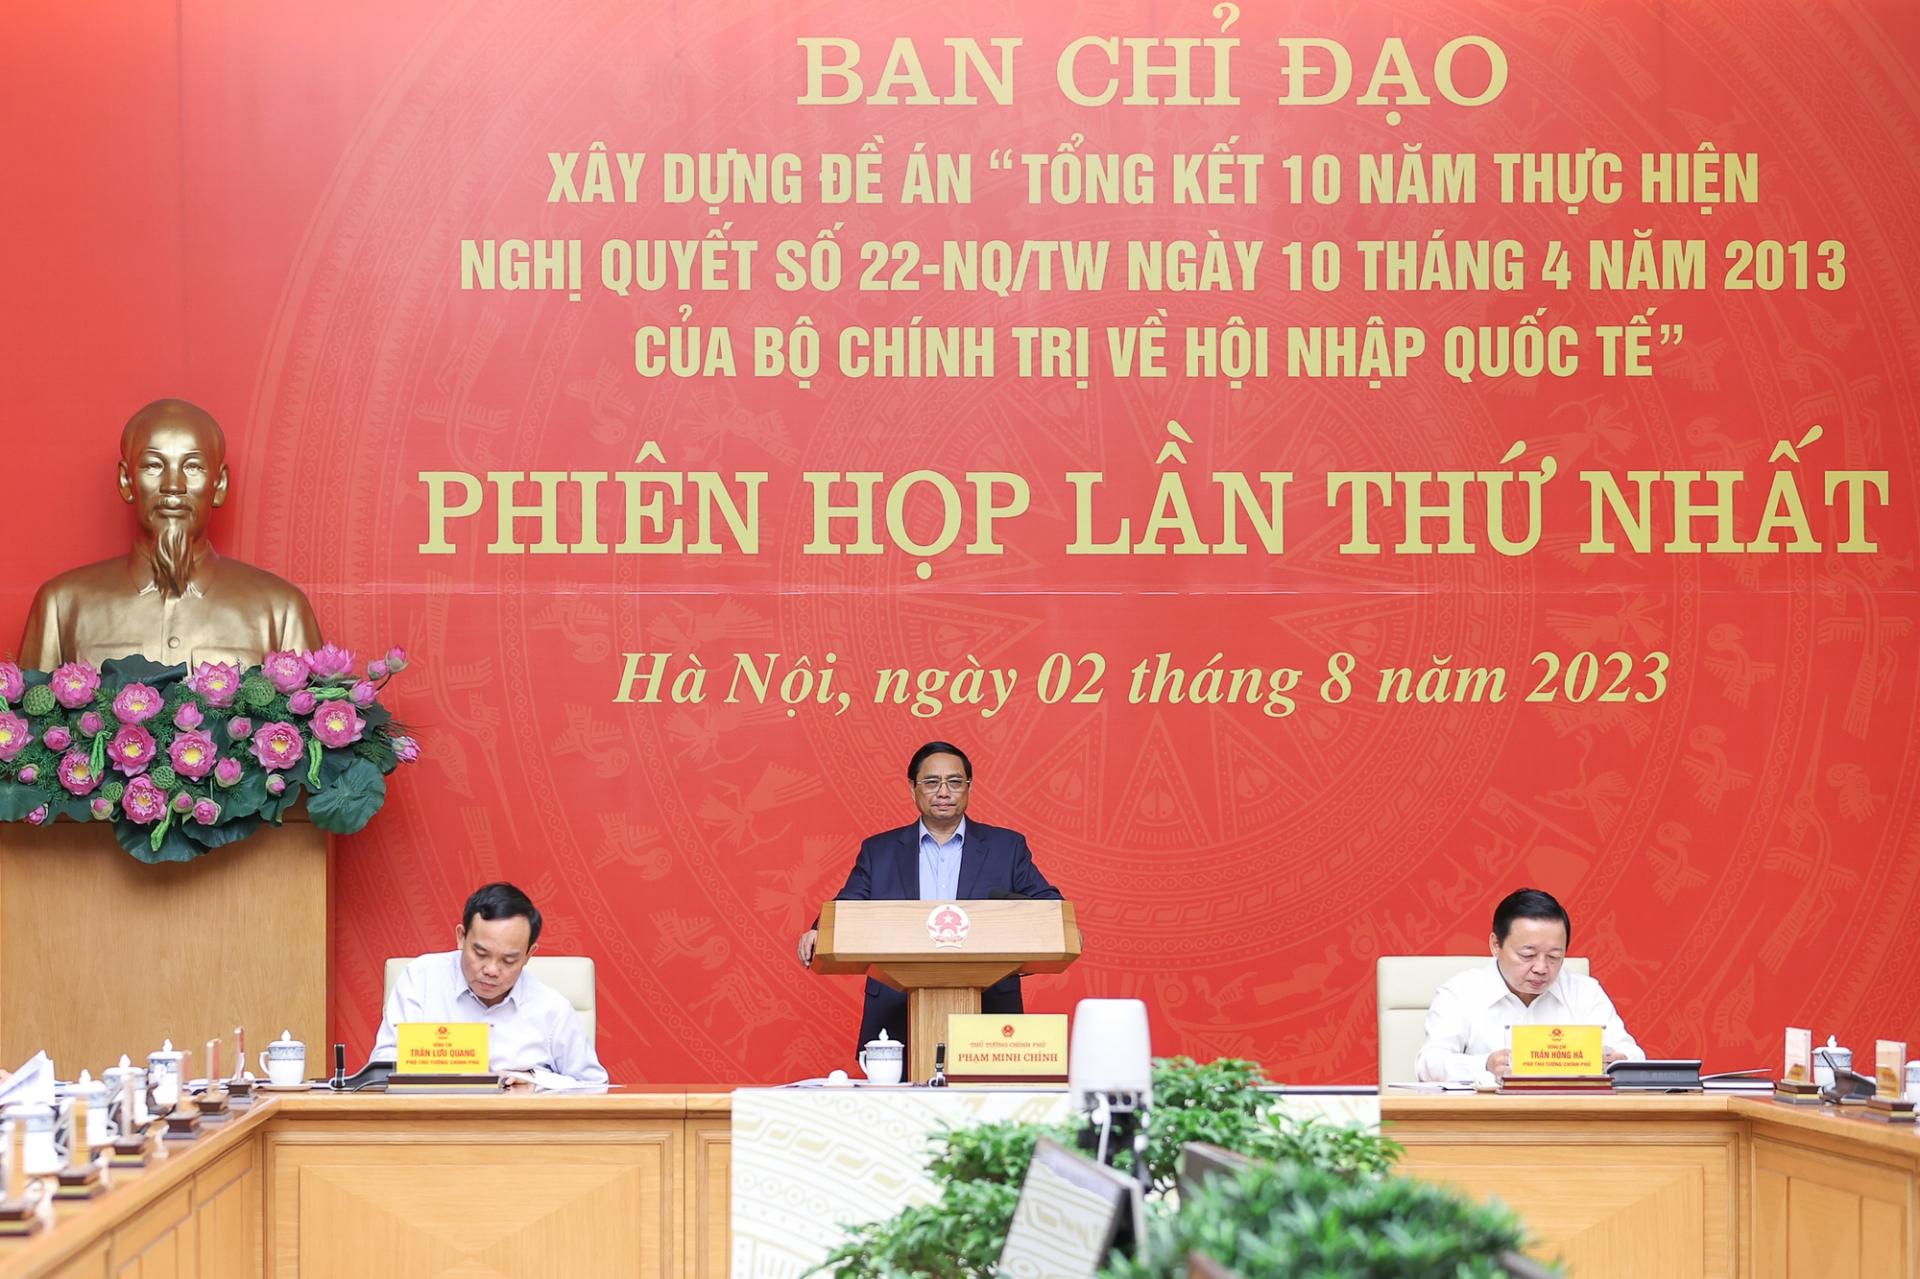 Thủ tướng Phạm Minh Chính chủ trì phiên họp thứ nhất Ban Chỉ đạo xây dựng Đề án Tổng kết 10 năm thực hiện Nghị quyết số 22-NQ/TW ngày 10/4/2013 của Bộ Chính trị về hội nhập quốc tế - Ảnh: VGP